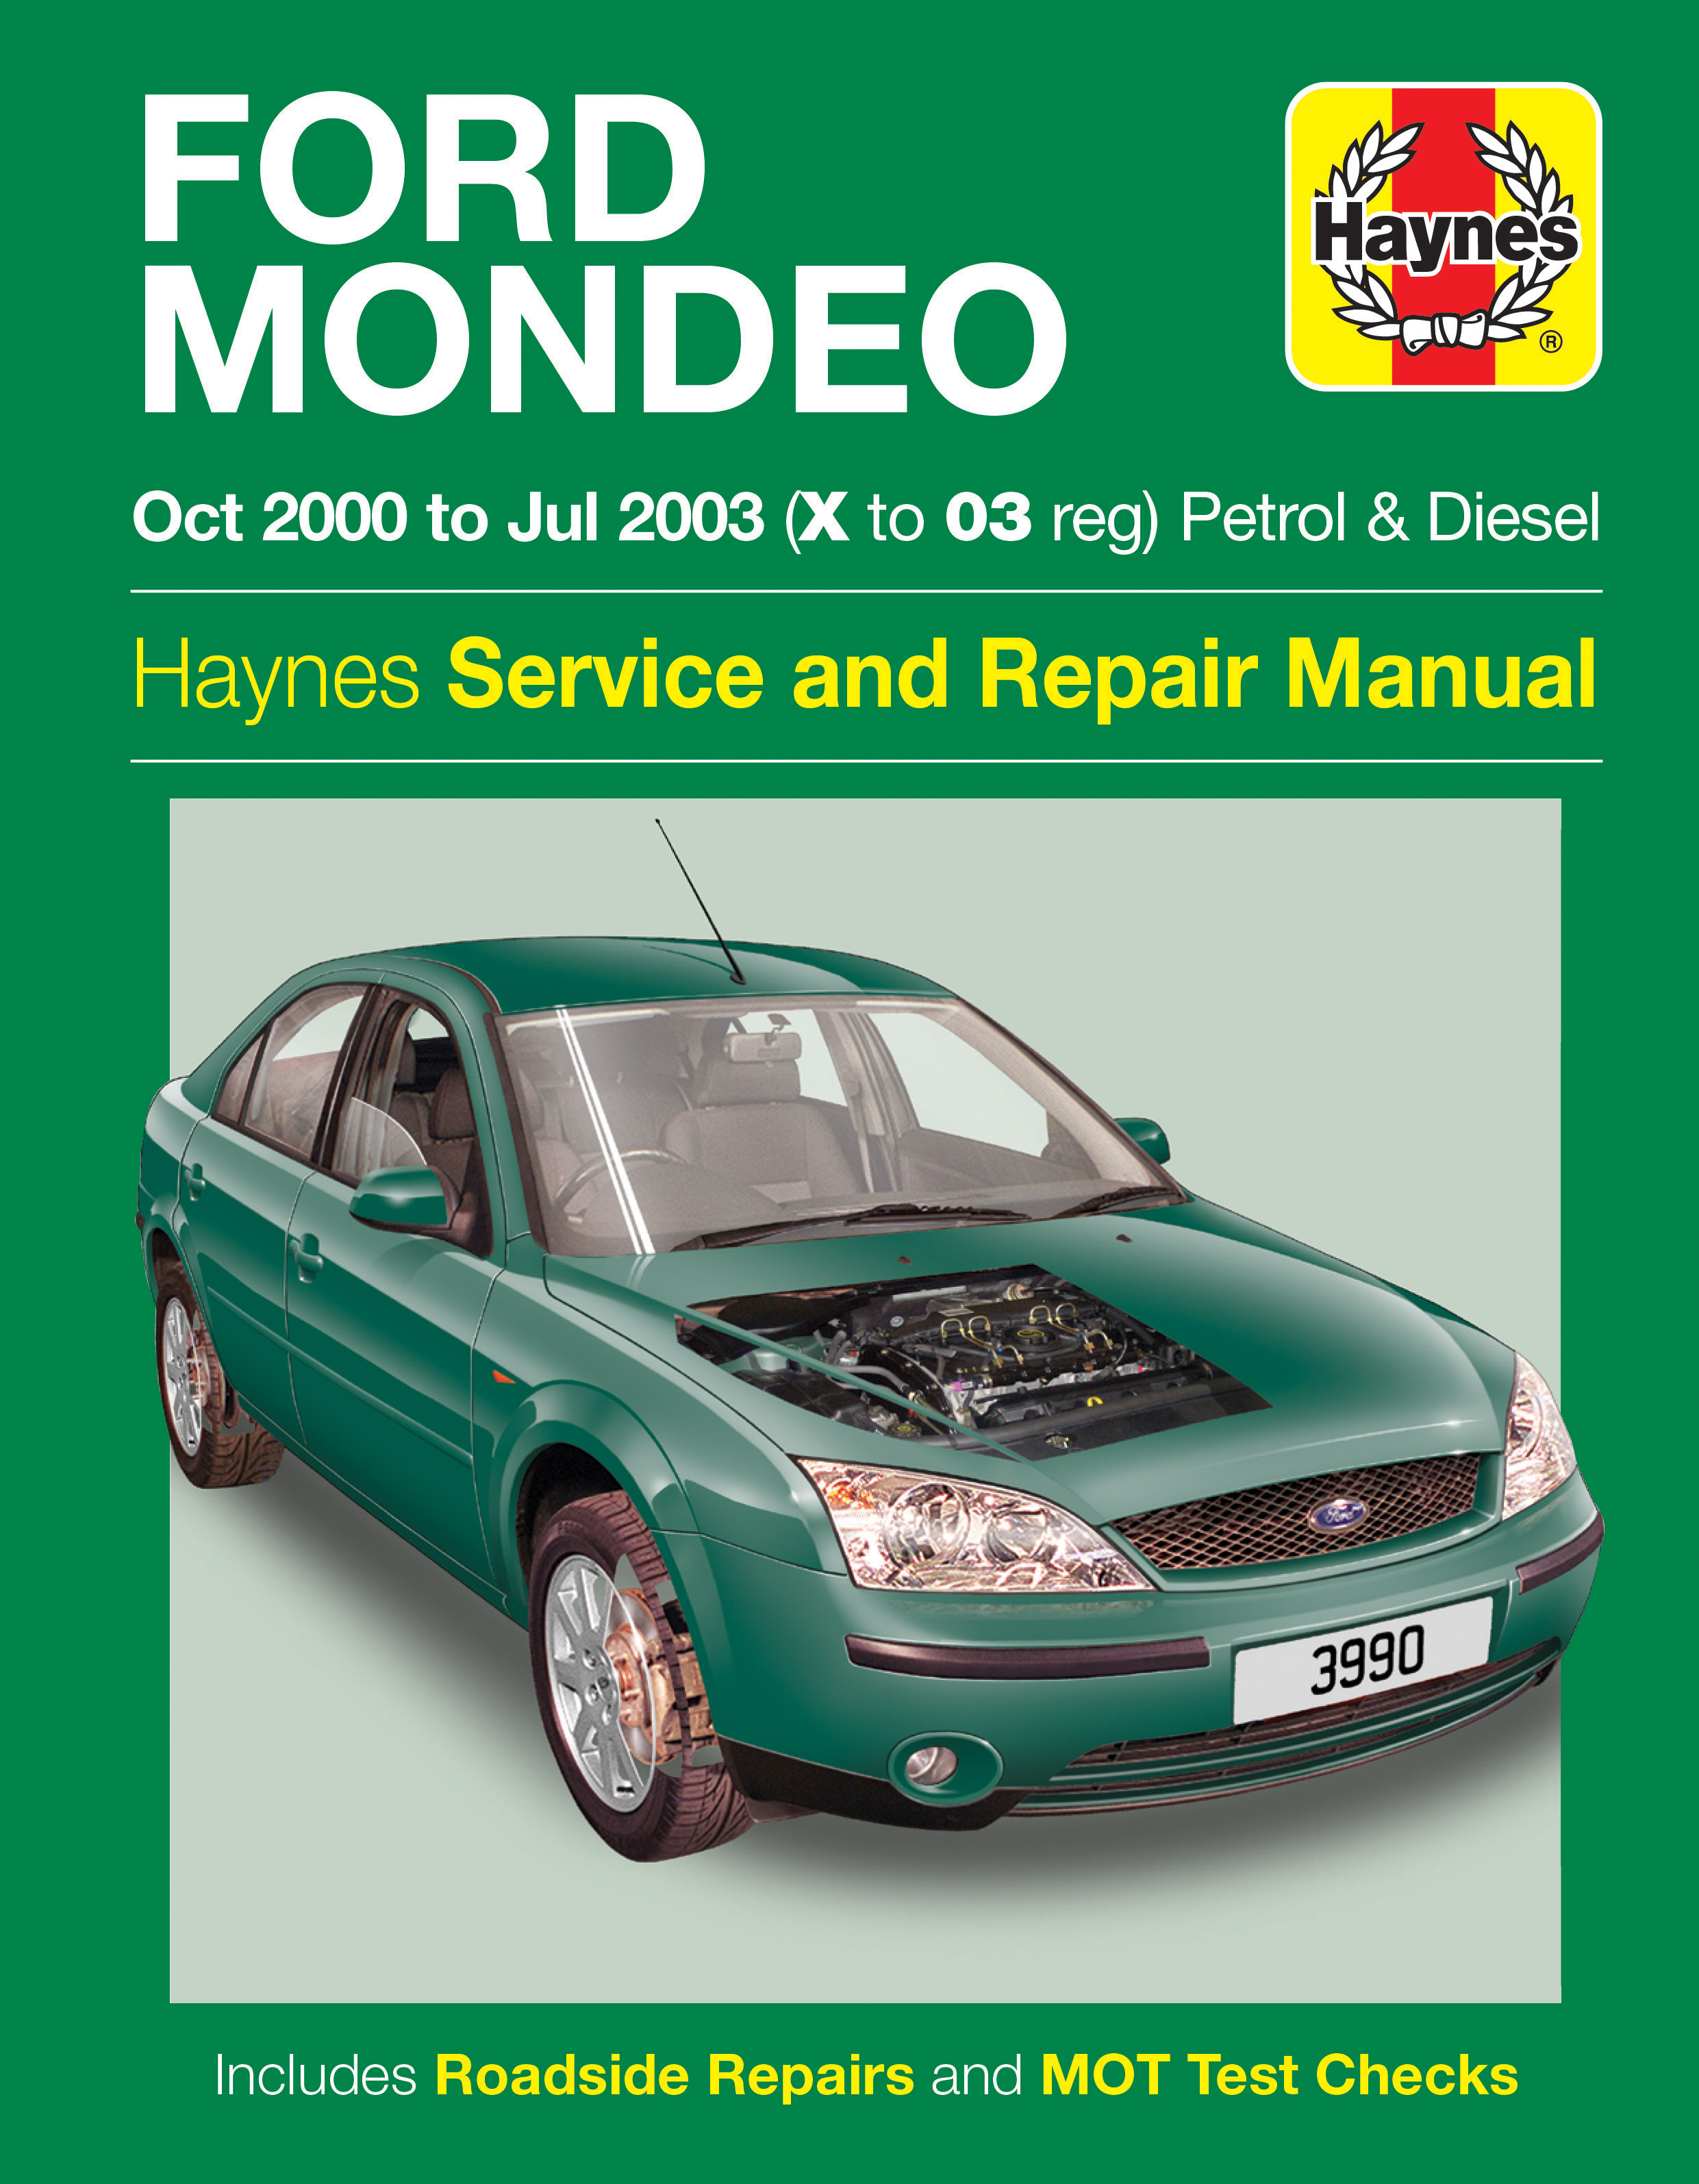 Haynes Workshop Manual Ford Mondeo Petrol Diesel 2003-2007 Service & Repair 